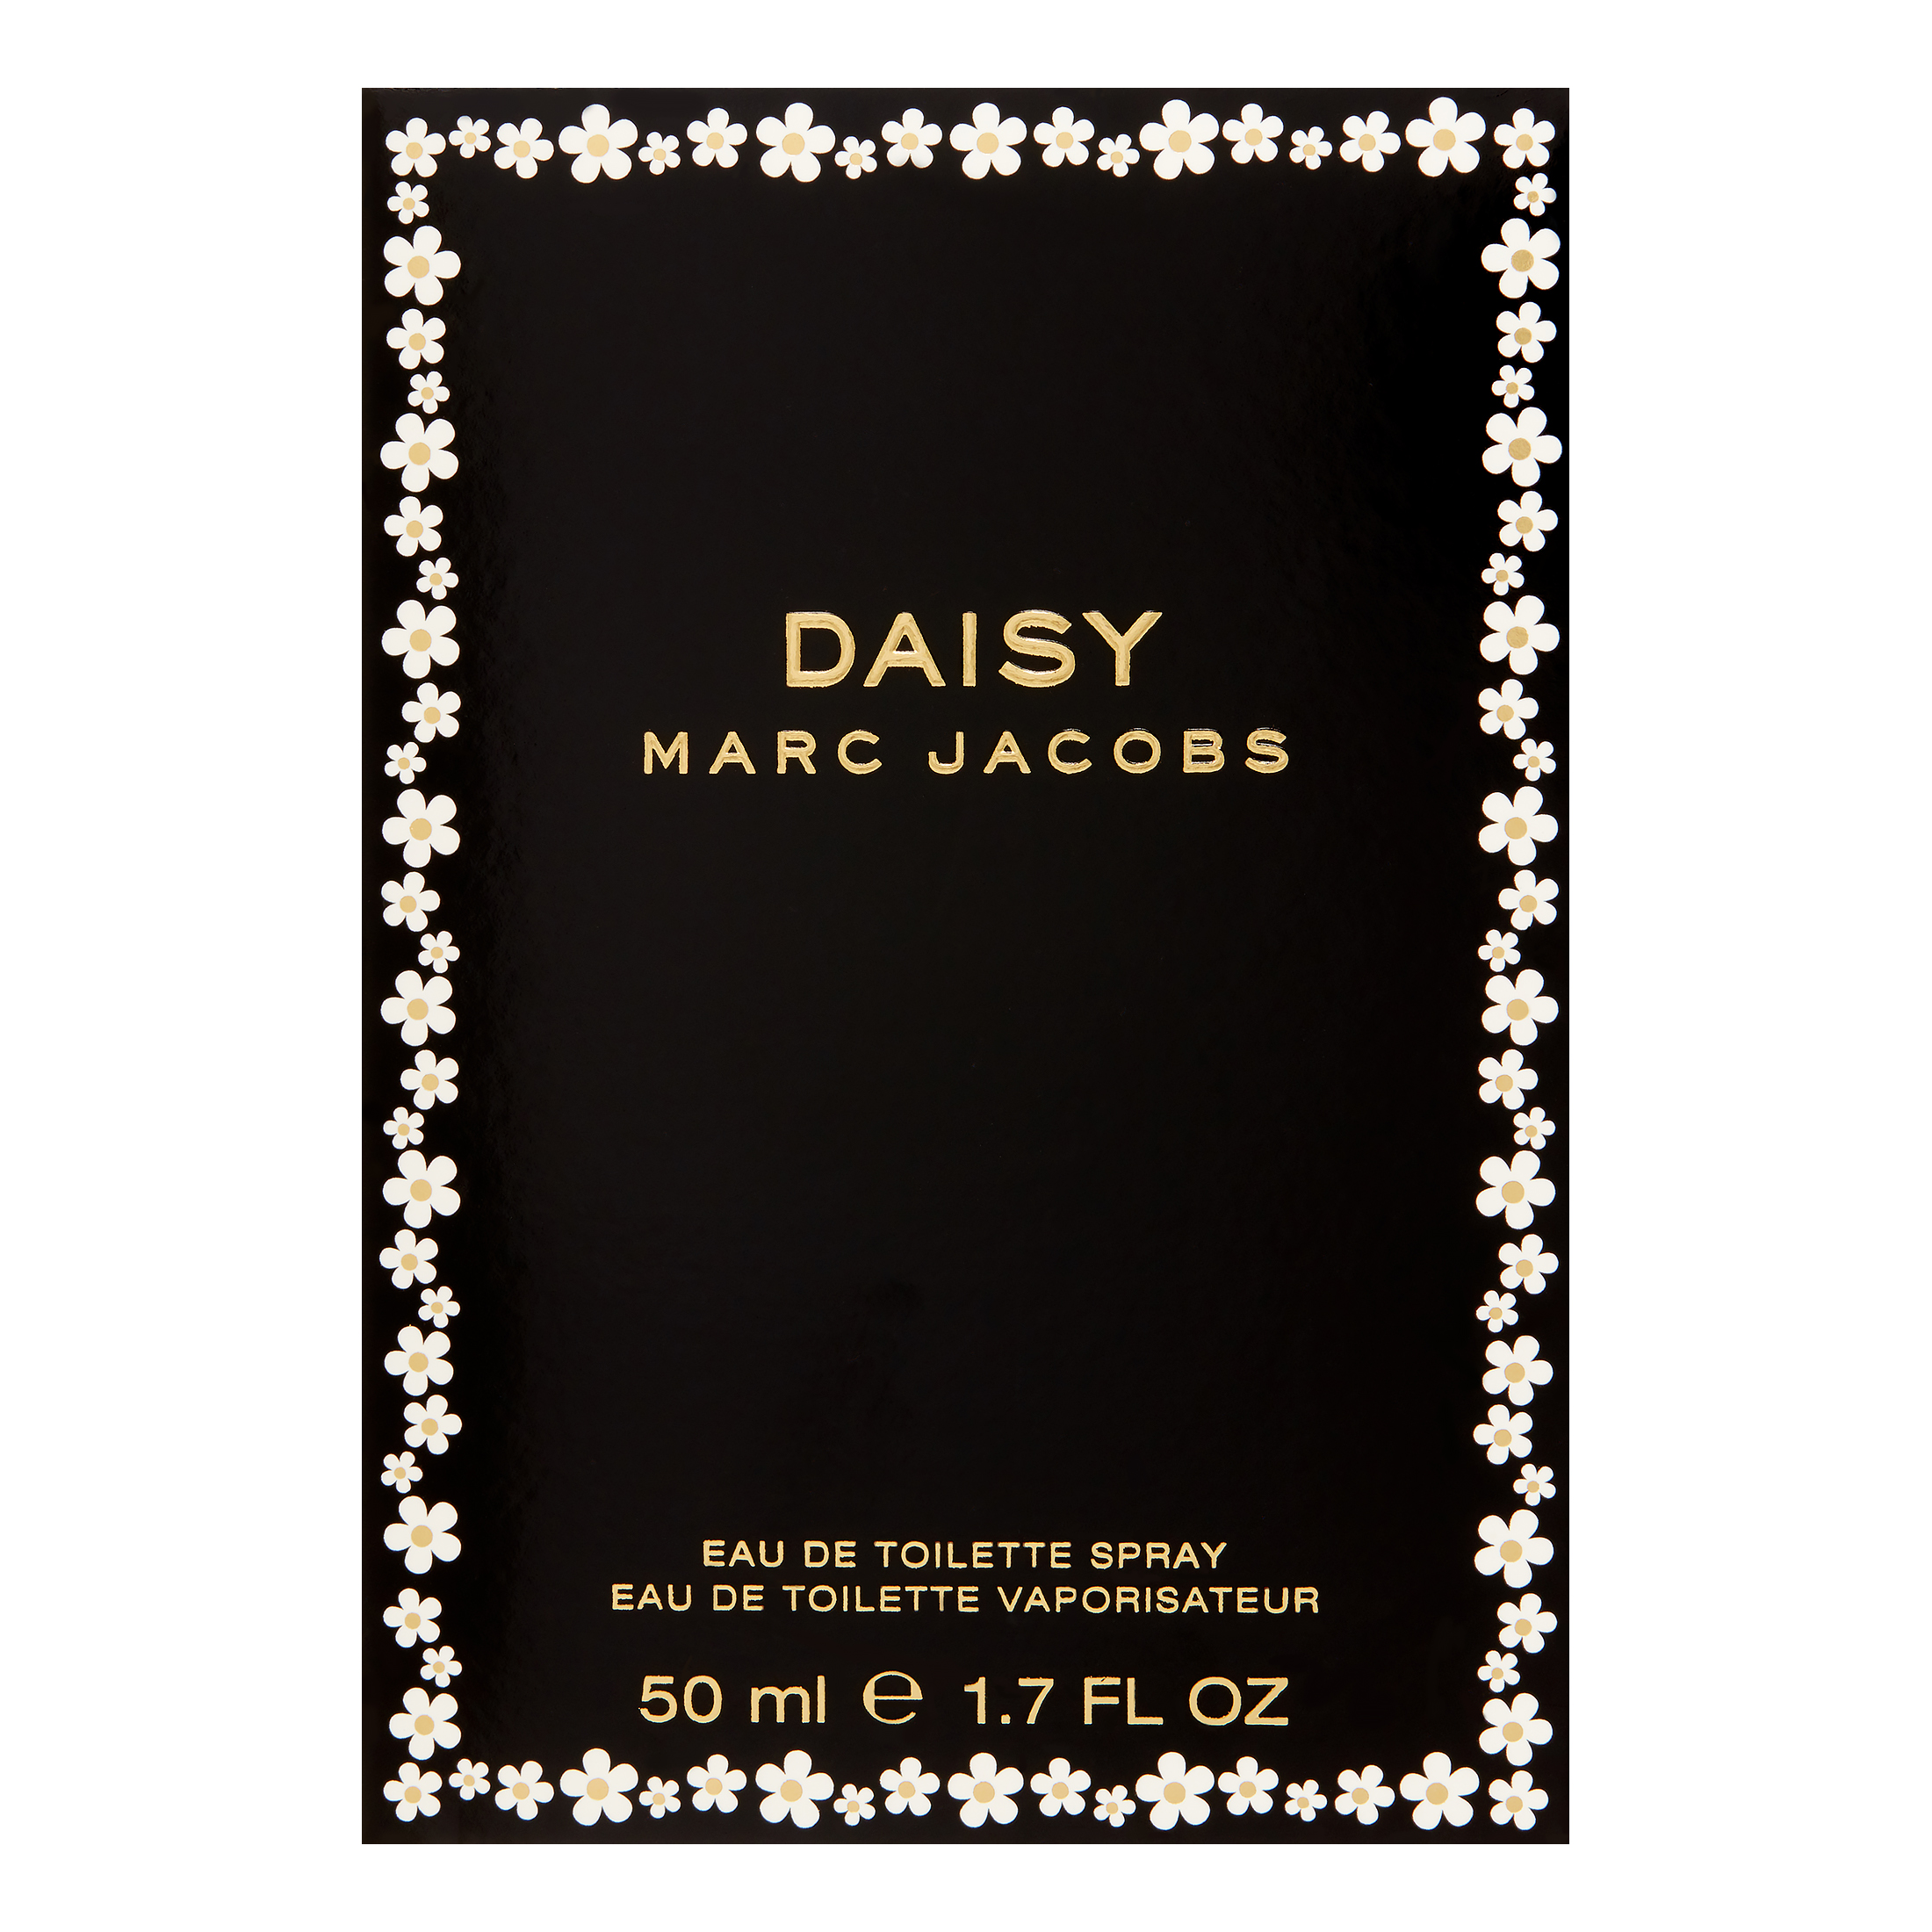 Marc Jacobs Daisy Eau De Toilette, Perfume for Women, 1.7 Oz - image 3 of 8